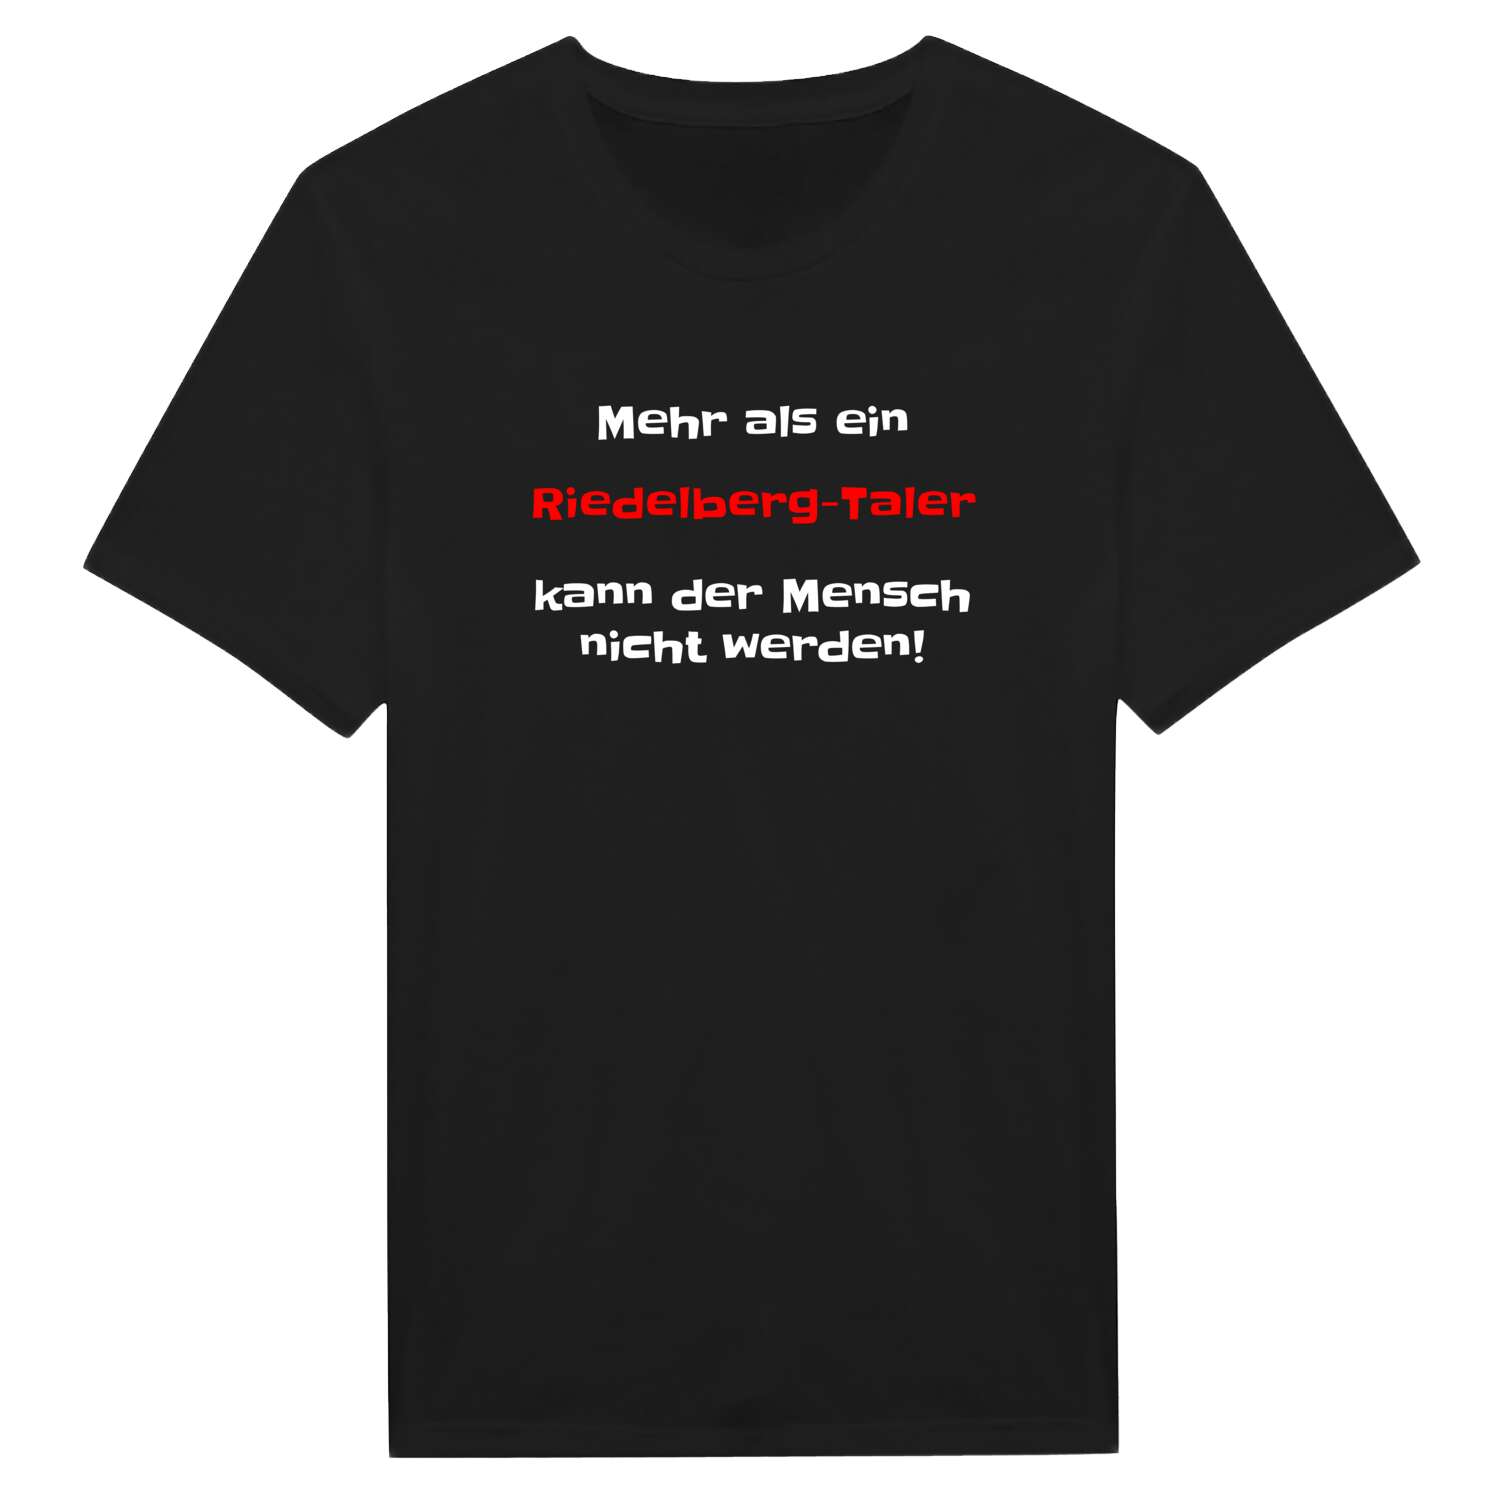 Riedelberg-Tal T-Shirt »Mehr als ein«